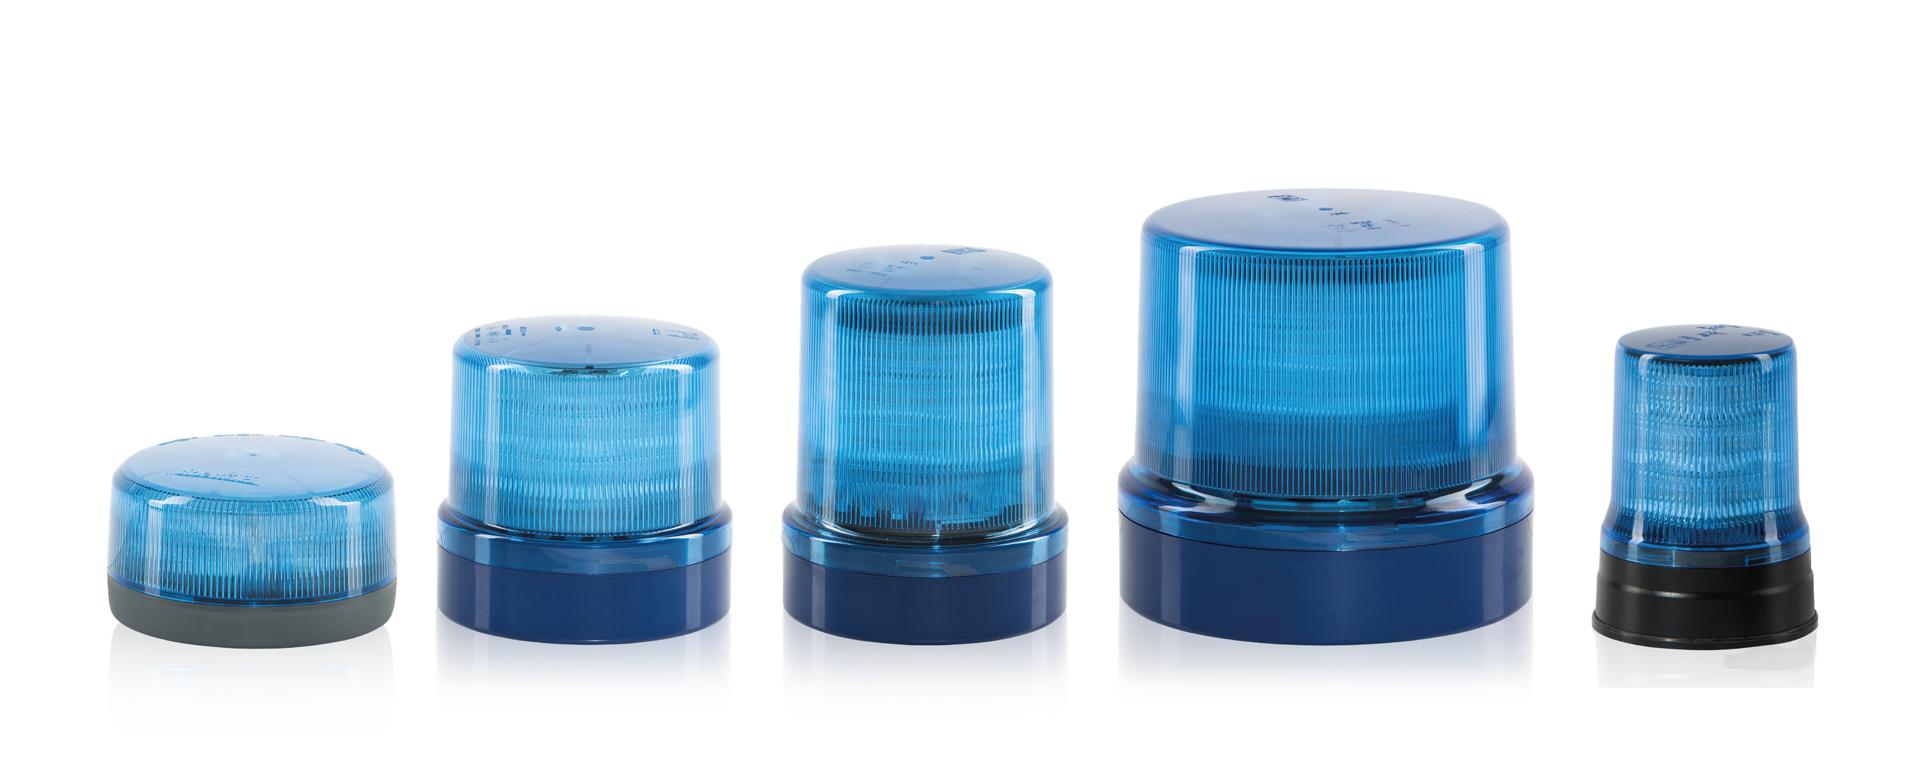 Hänsch GmbH - Kennleuchten LED Technik - Einsatzgebiet blau - Produkte